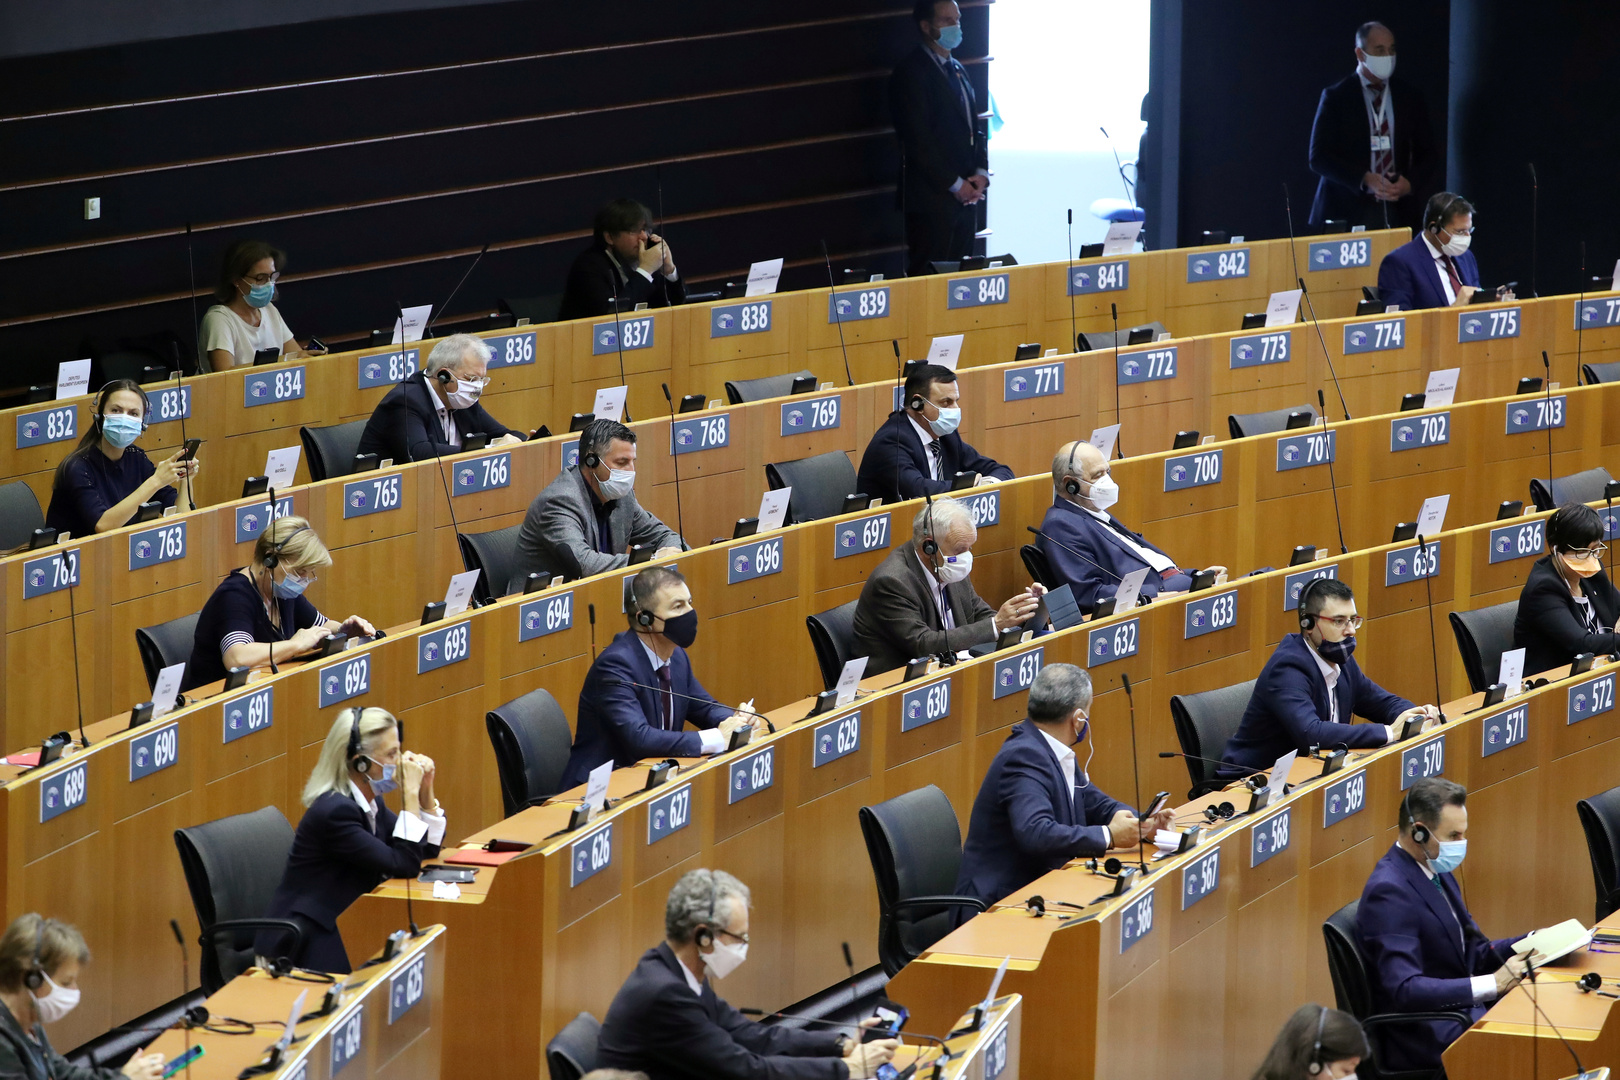 البرلمان الأوروبي: لوكاشينكو لن يعتبر رئيسا شرعيا لبيلاروس بعد 5 نوفمبر المقبل